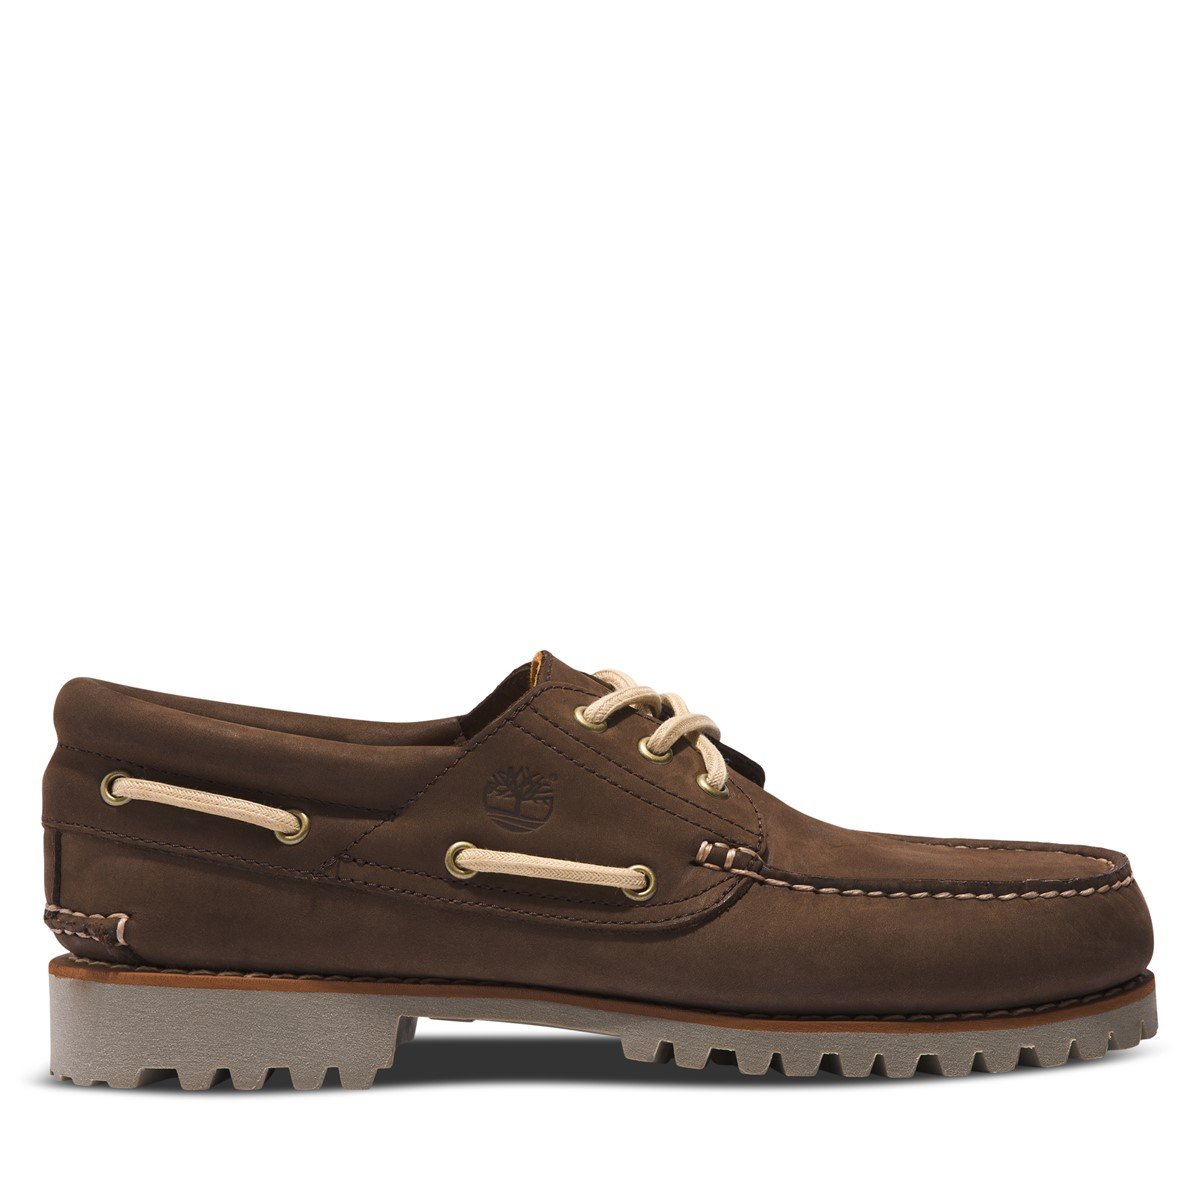 Men's 3-Eye Lug Boat Shoes in Dark Brown